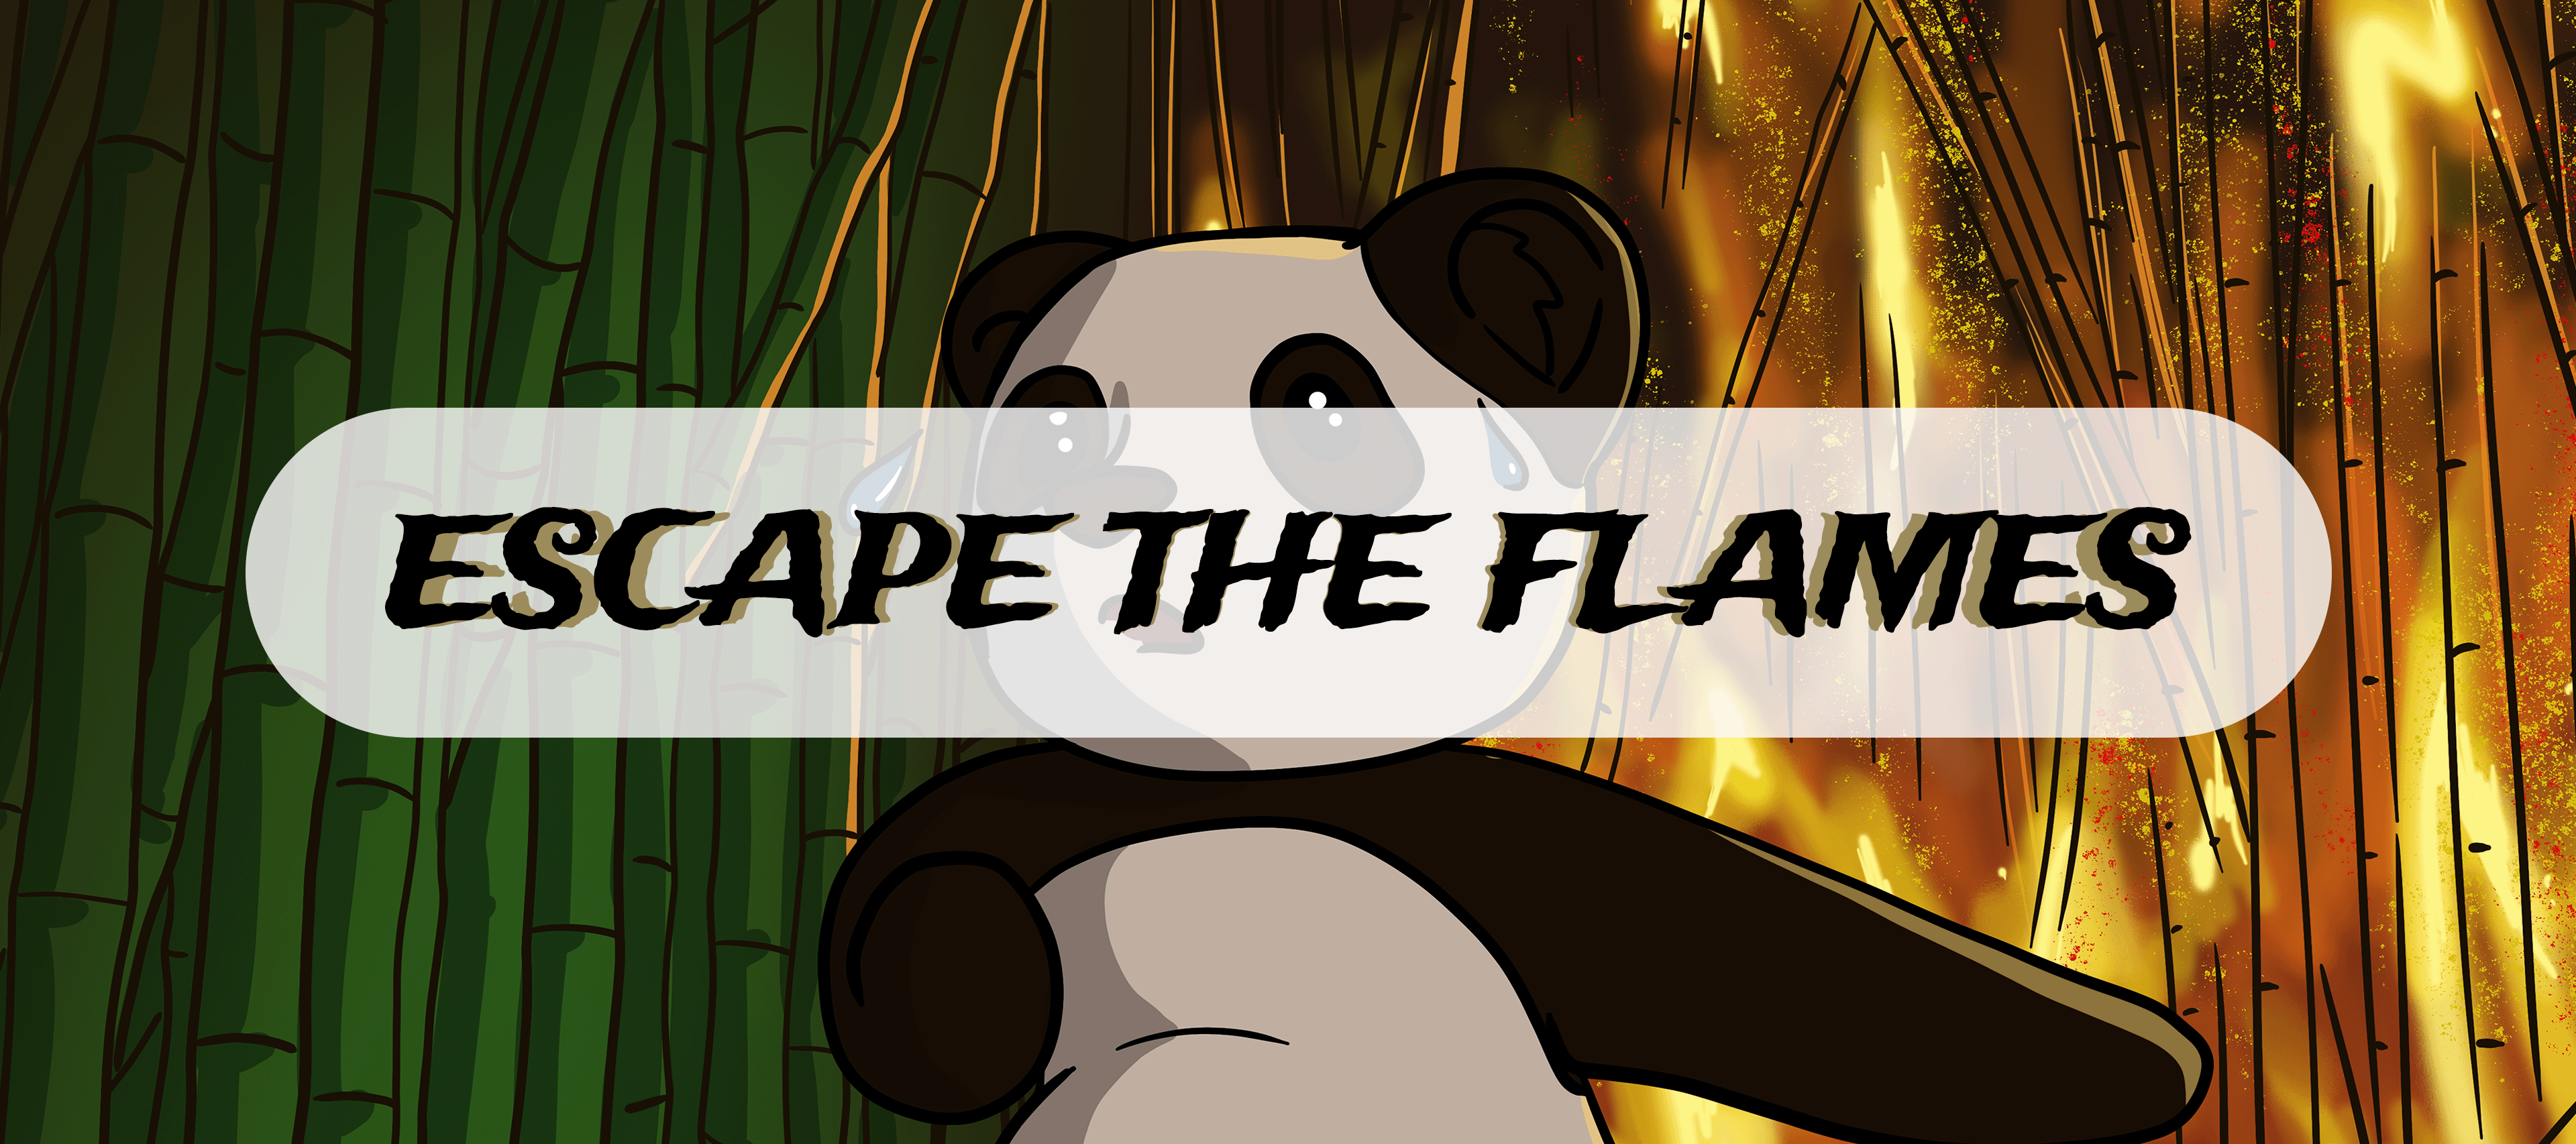 Escape the flames